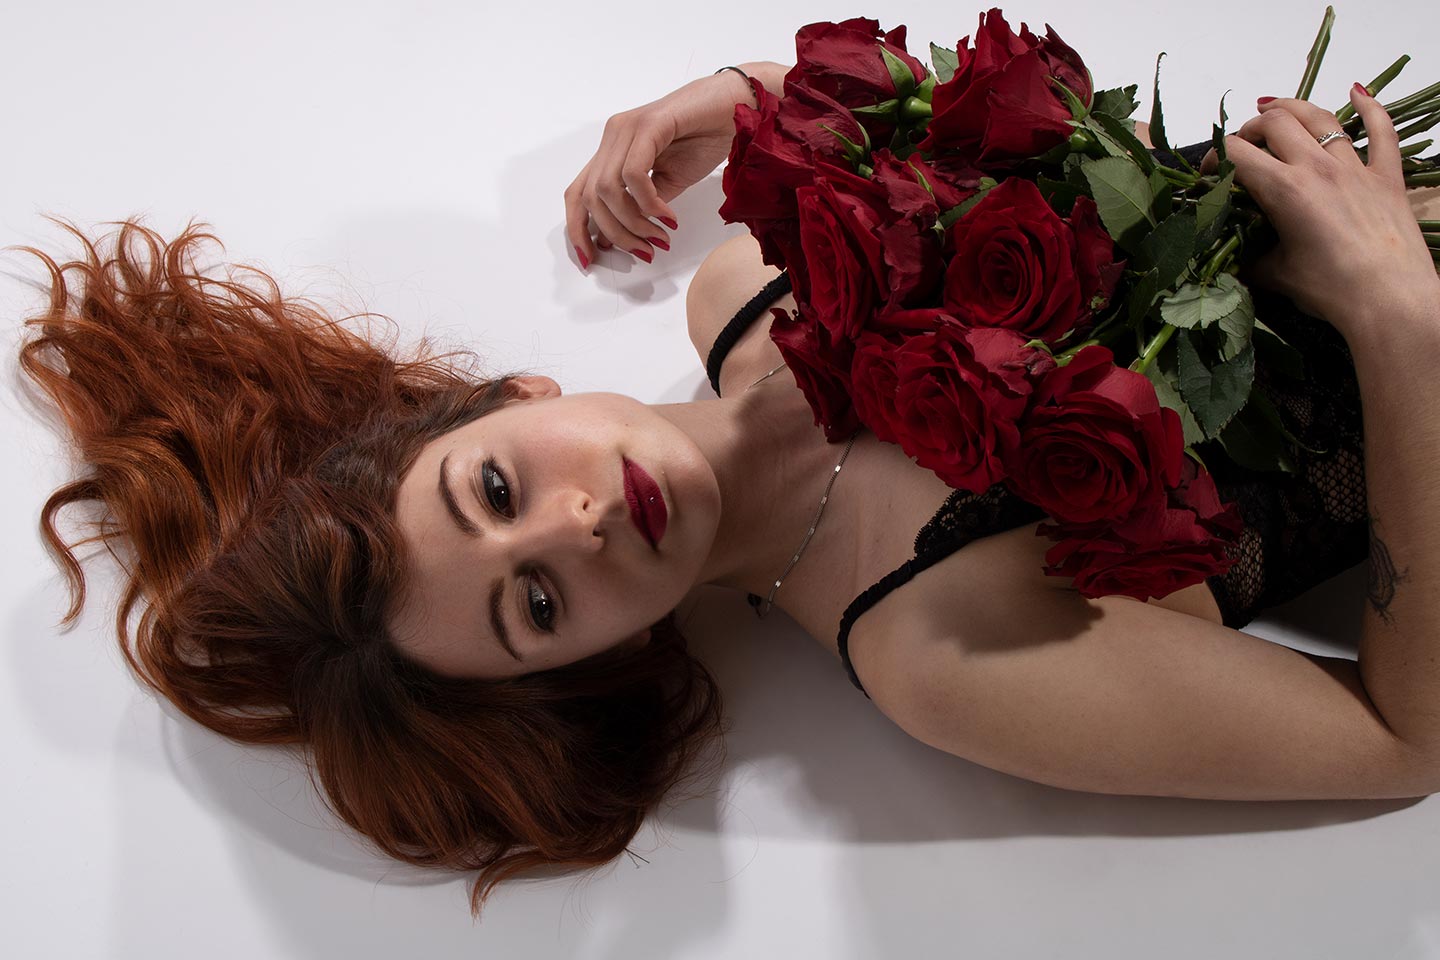 Modèle en lingerie tenant un bouquet de roses.